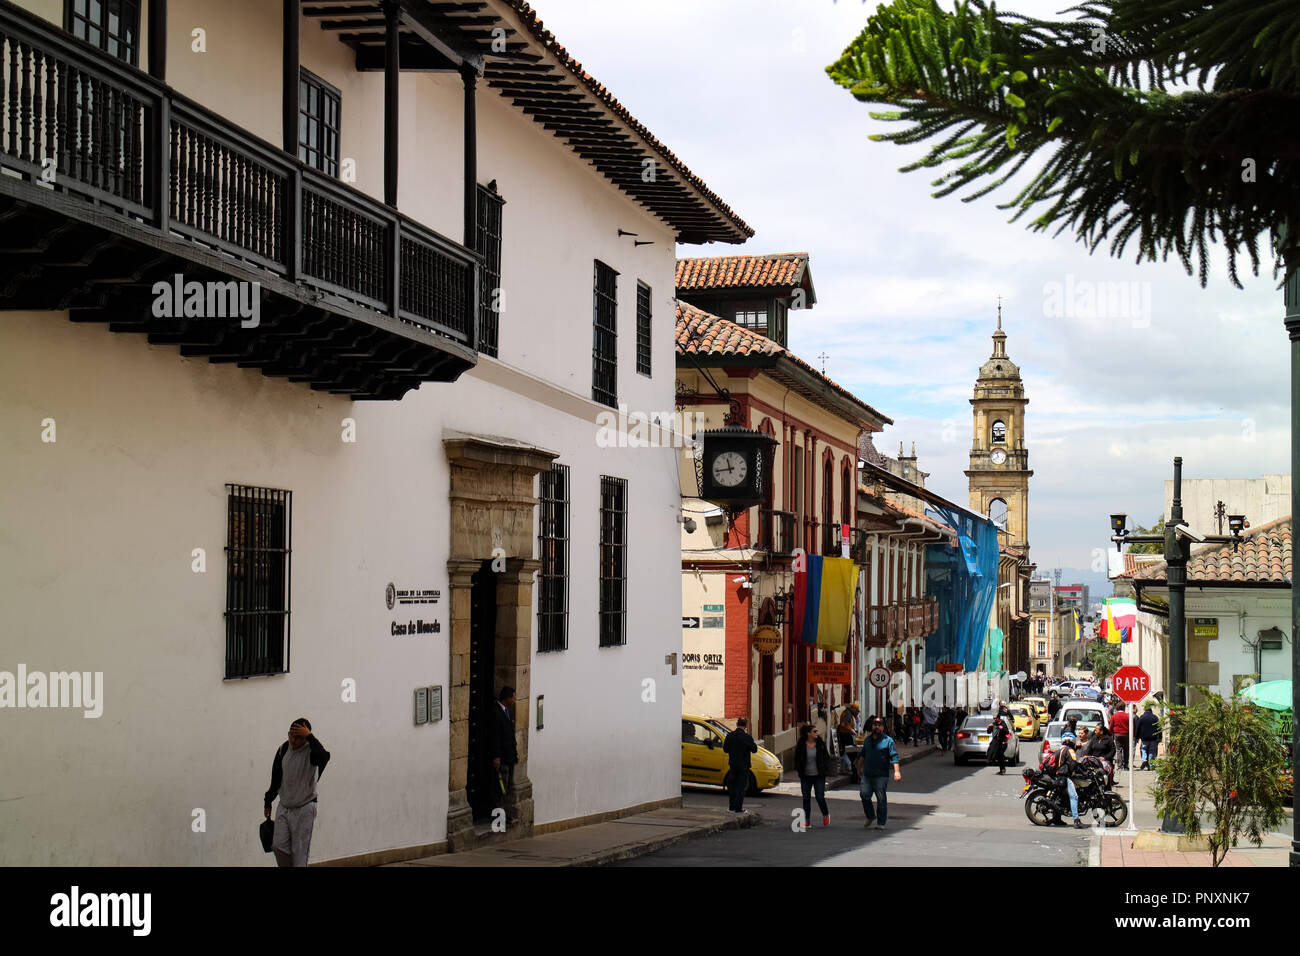 Bogota, Kolumbien - 27 Januar, 2017: Auf der Suche Calle, oder übersetzt ins Englische, Straße, 11 in La Candelaria. Auf der linken Seite des Bildes ist die Ent Stockfoto